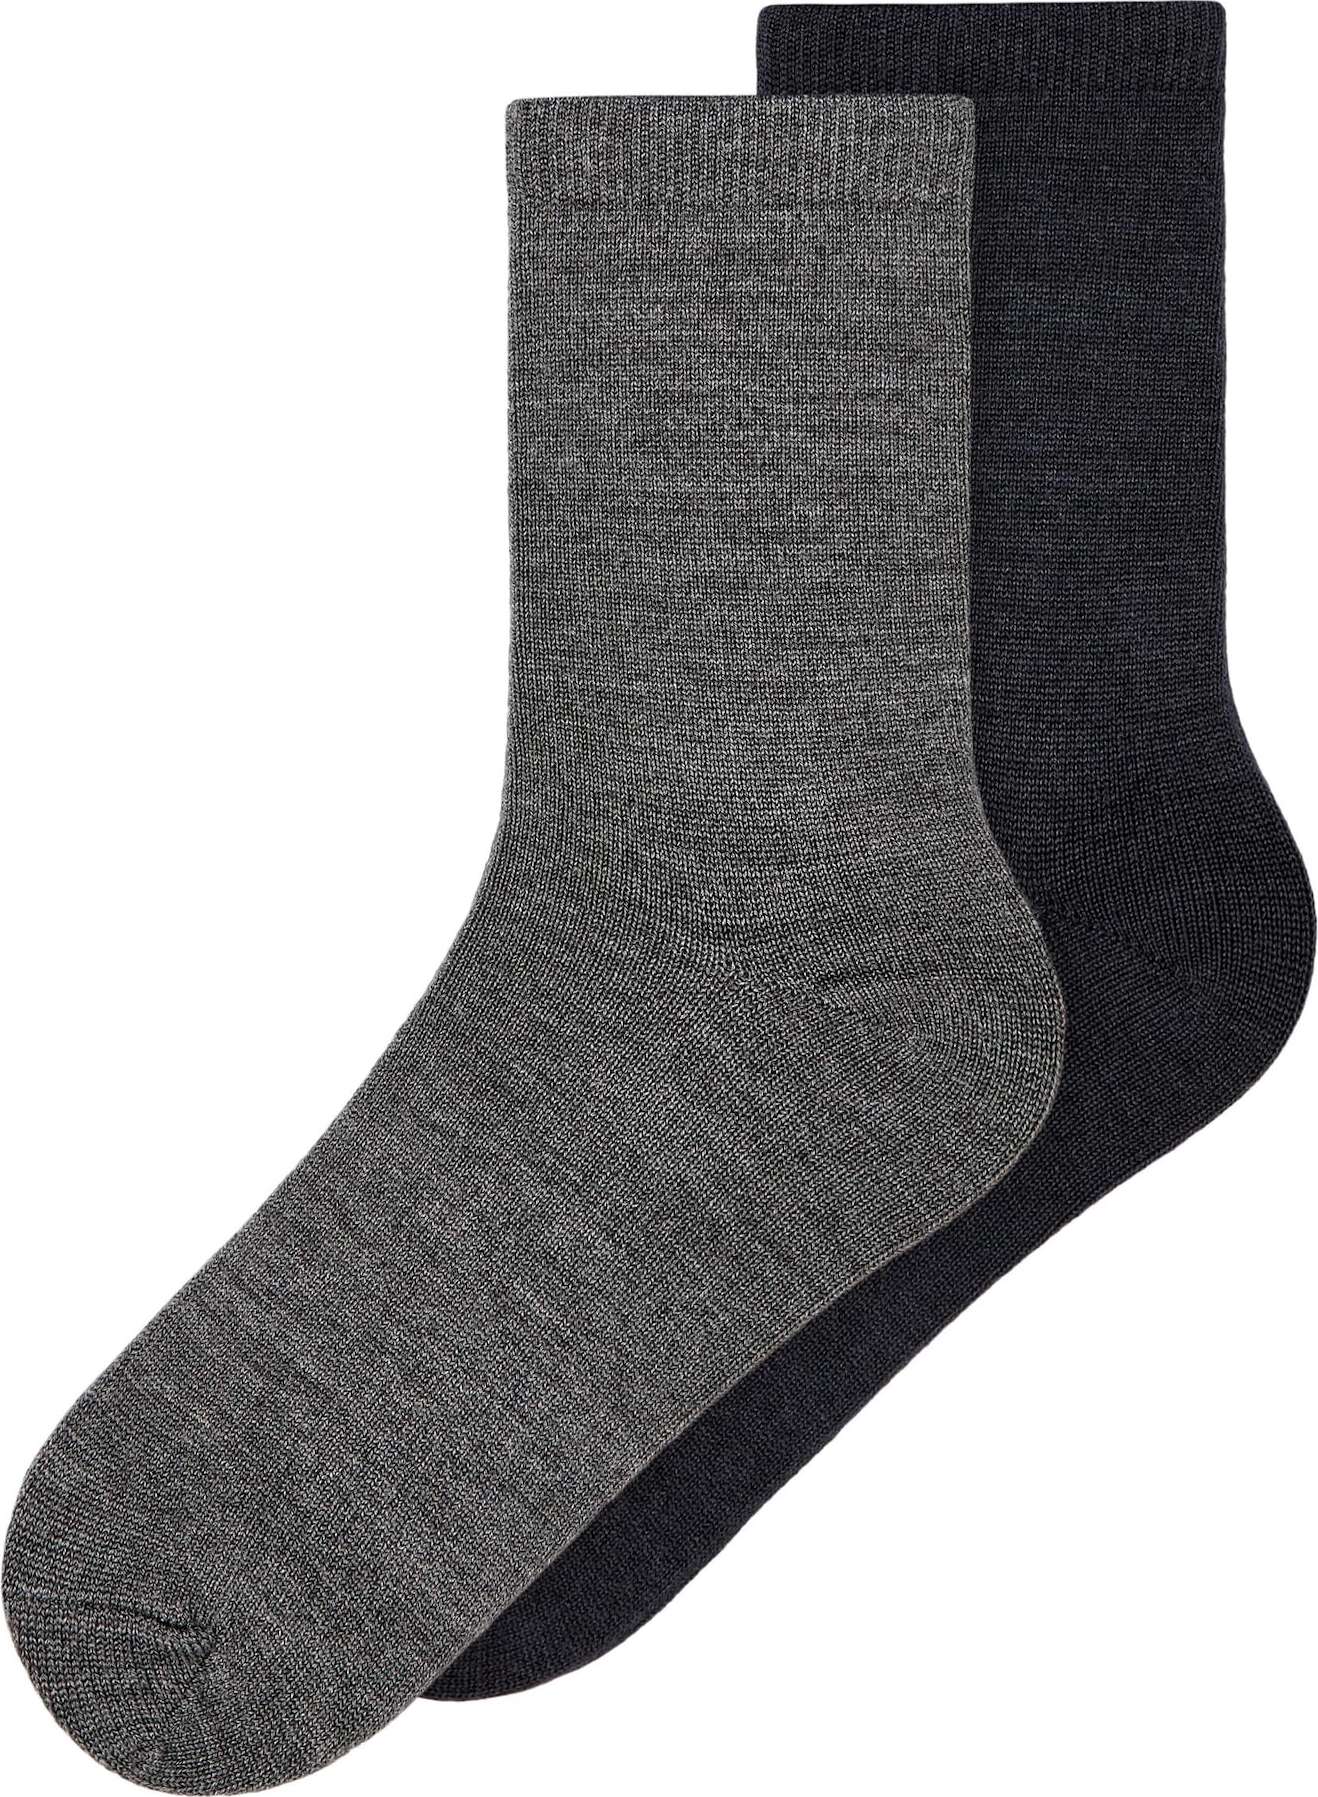 NAME IT Ponožky 'Wakta' antracitová / tmavě šedá